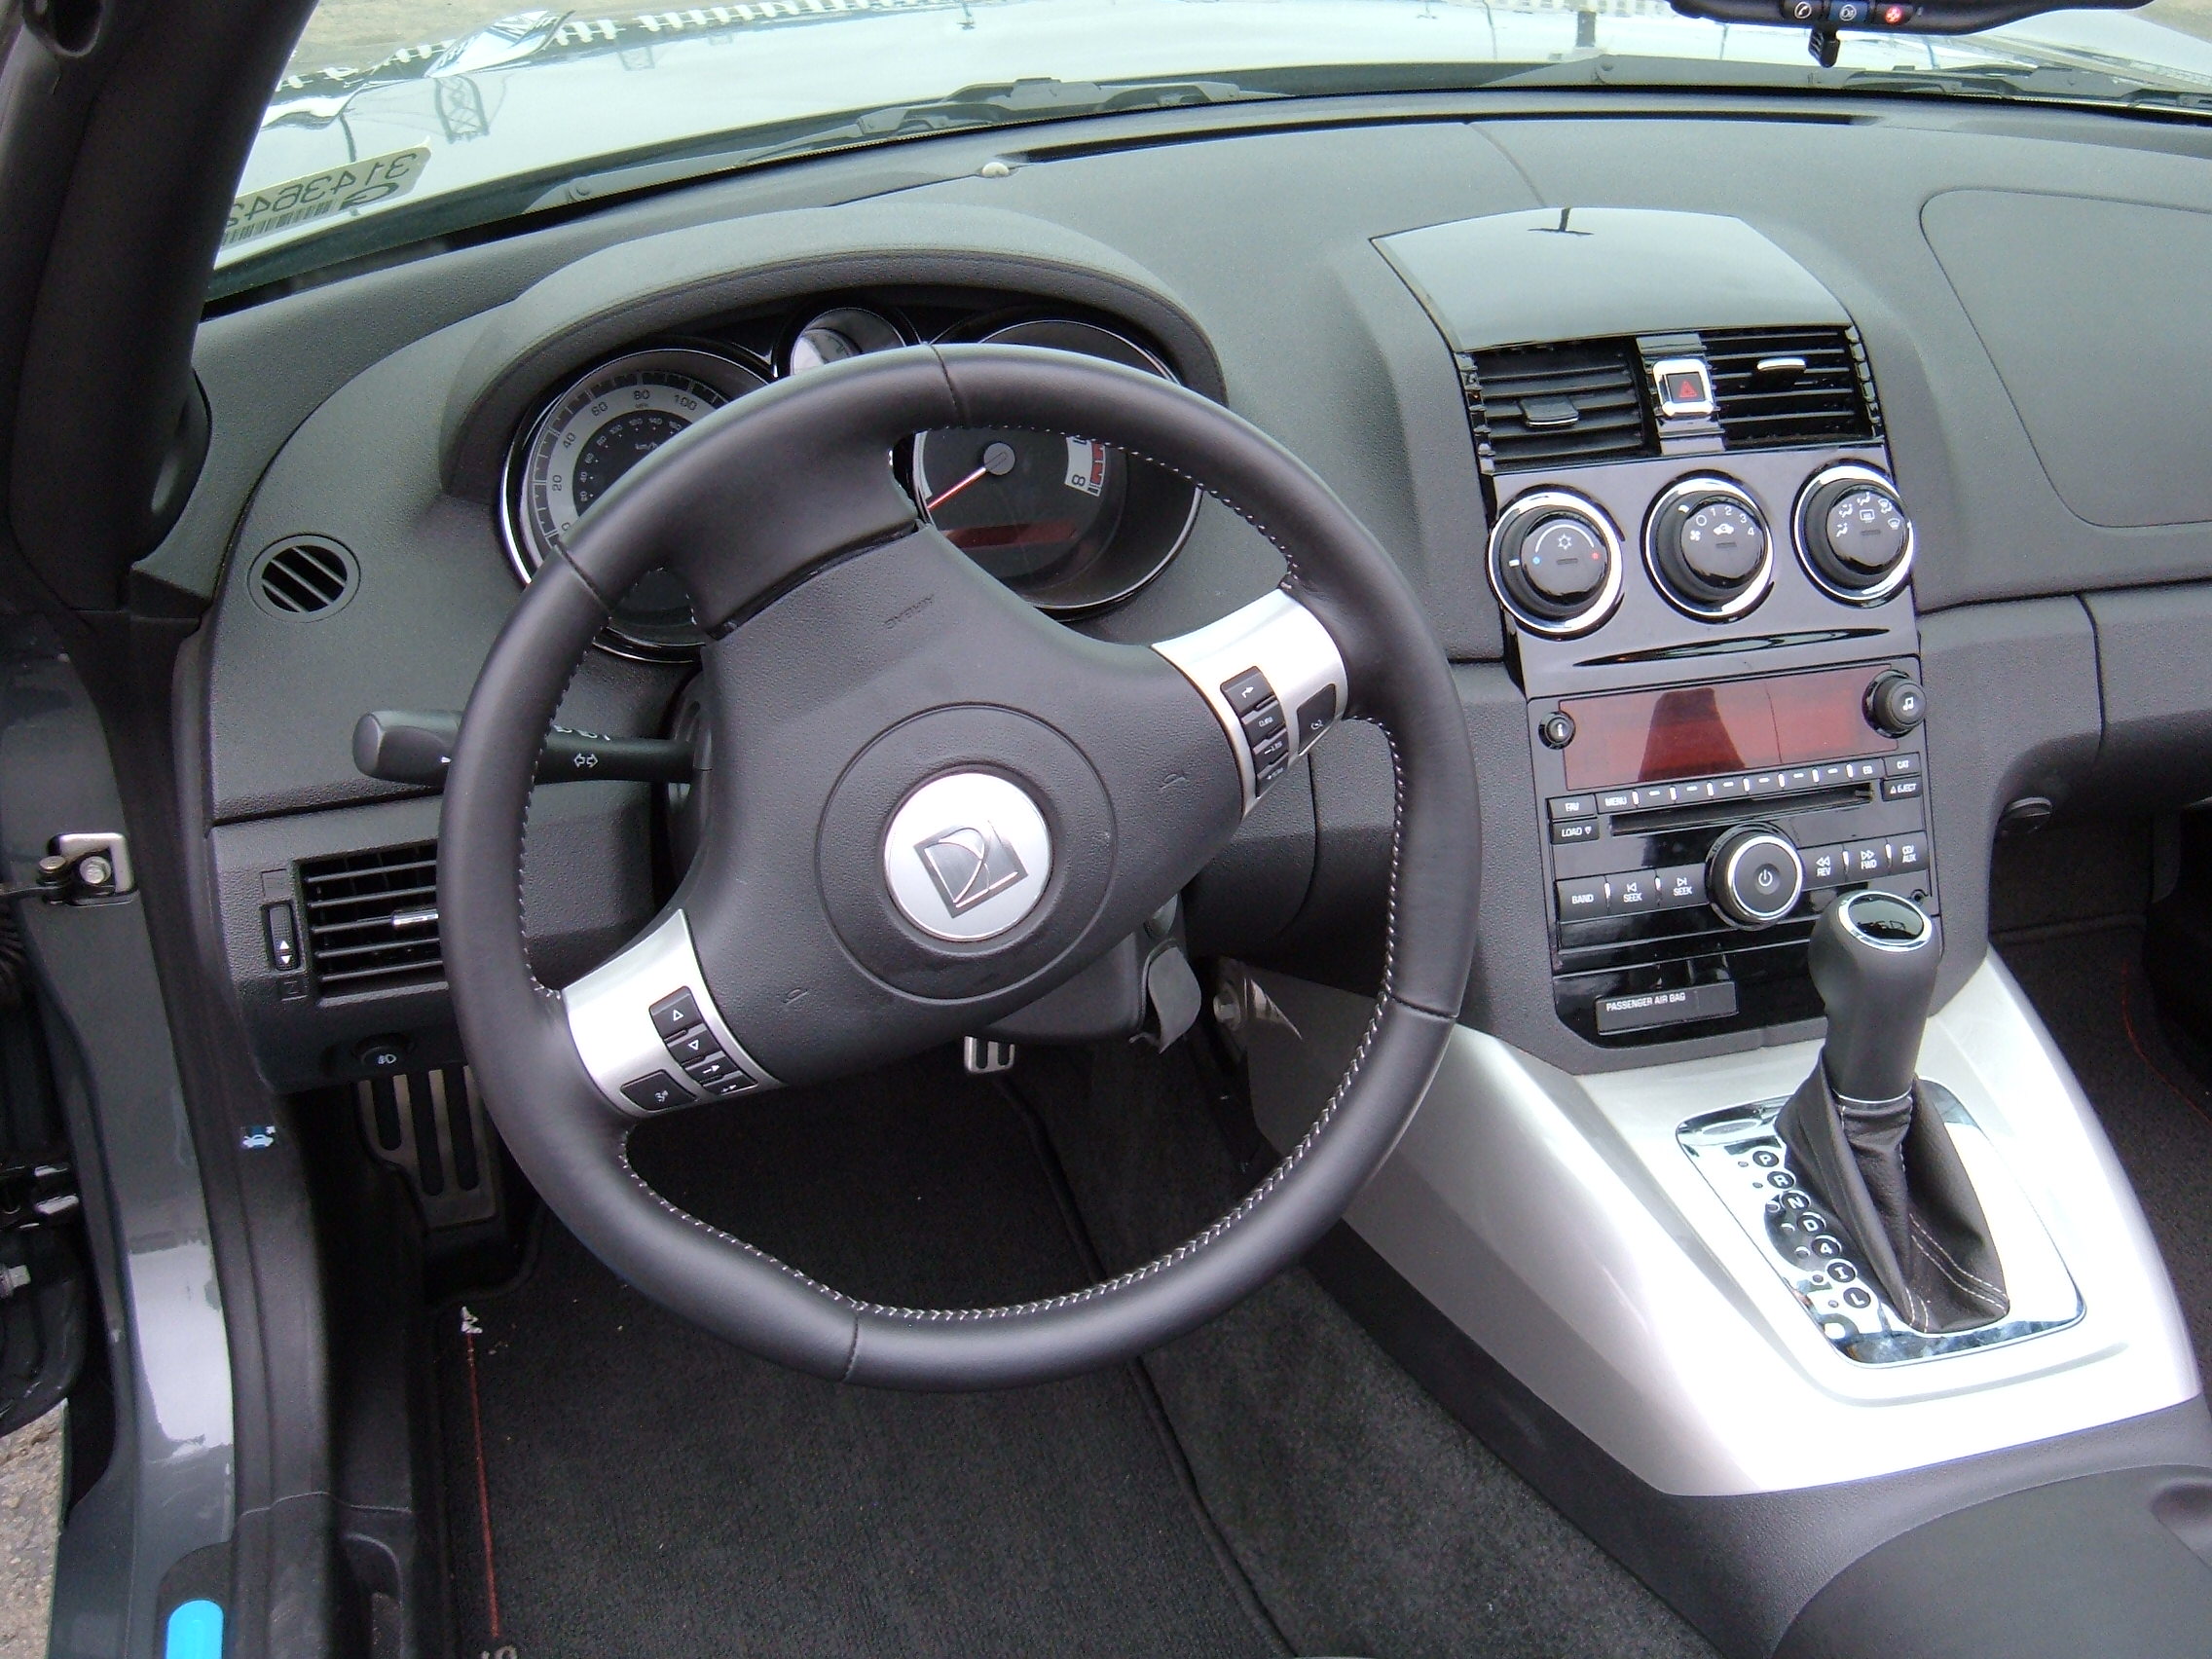 2009 gray Saturn Sky Red Line steering wheel